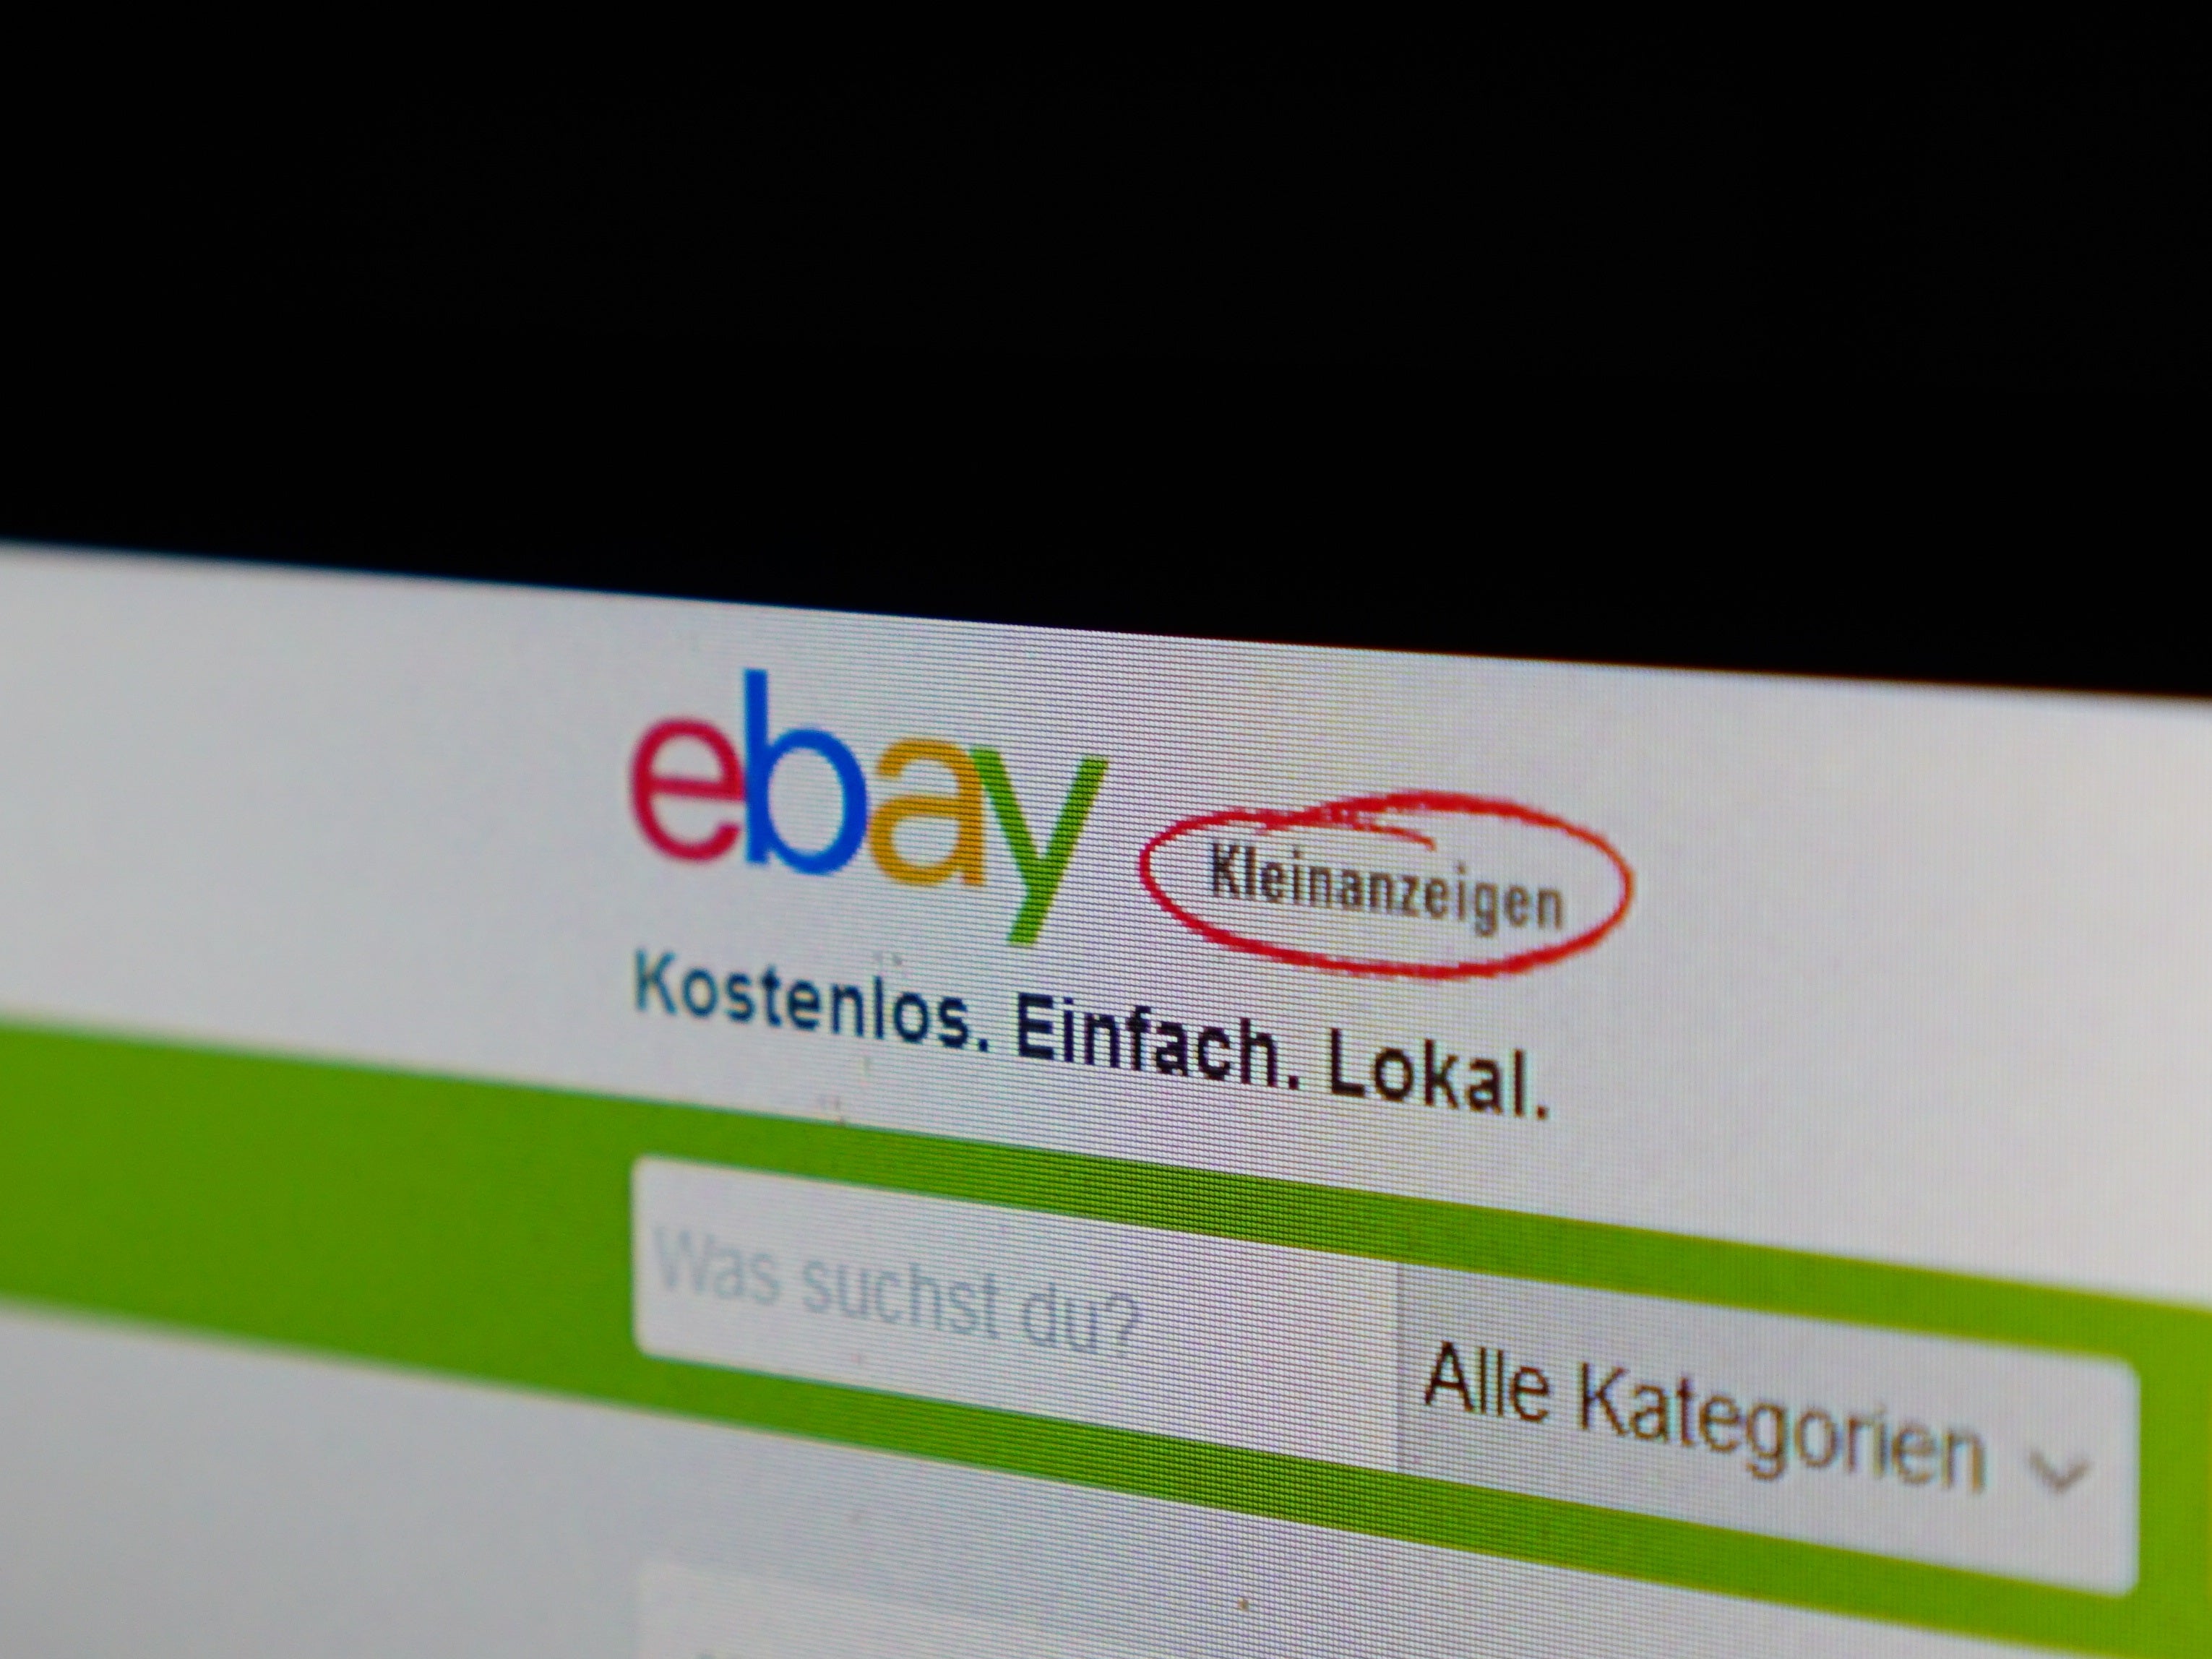 #Bandenbetrug auf eBay Kleinanzeigen aufgeflogen: Polizei warnt vor einfachem Trick